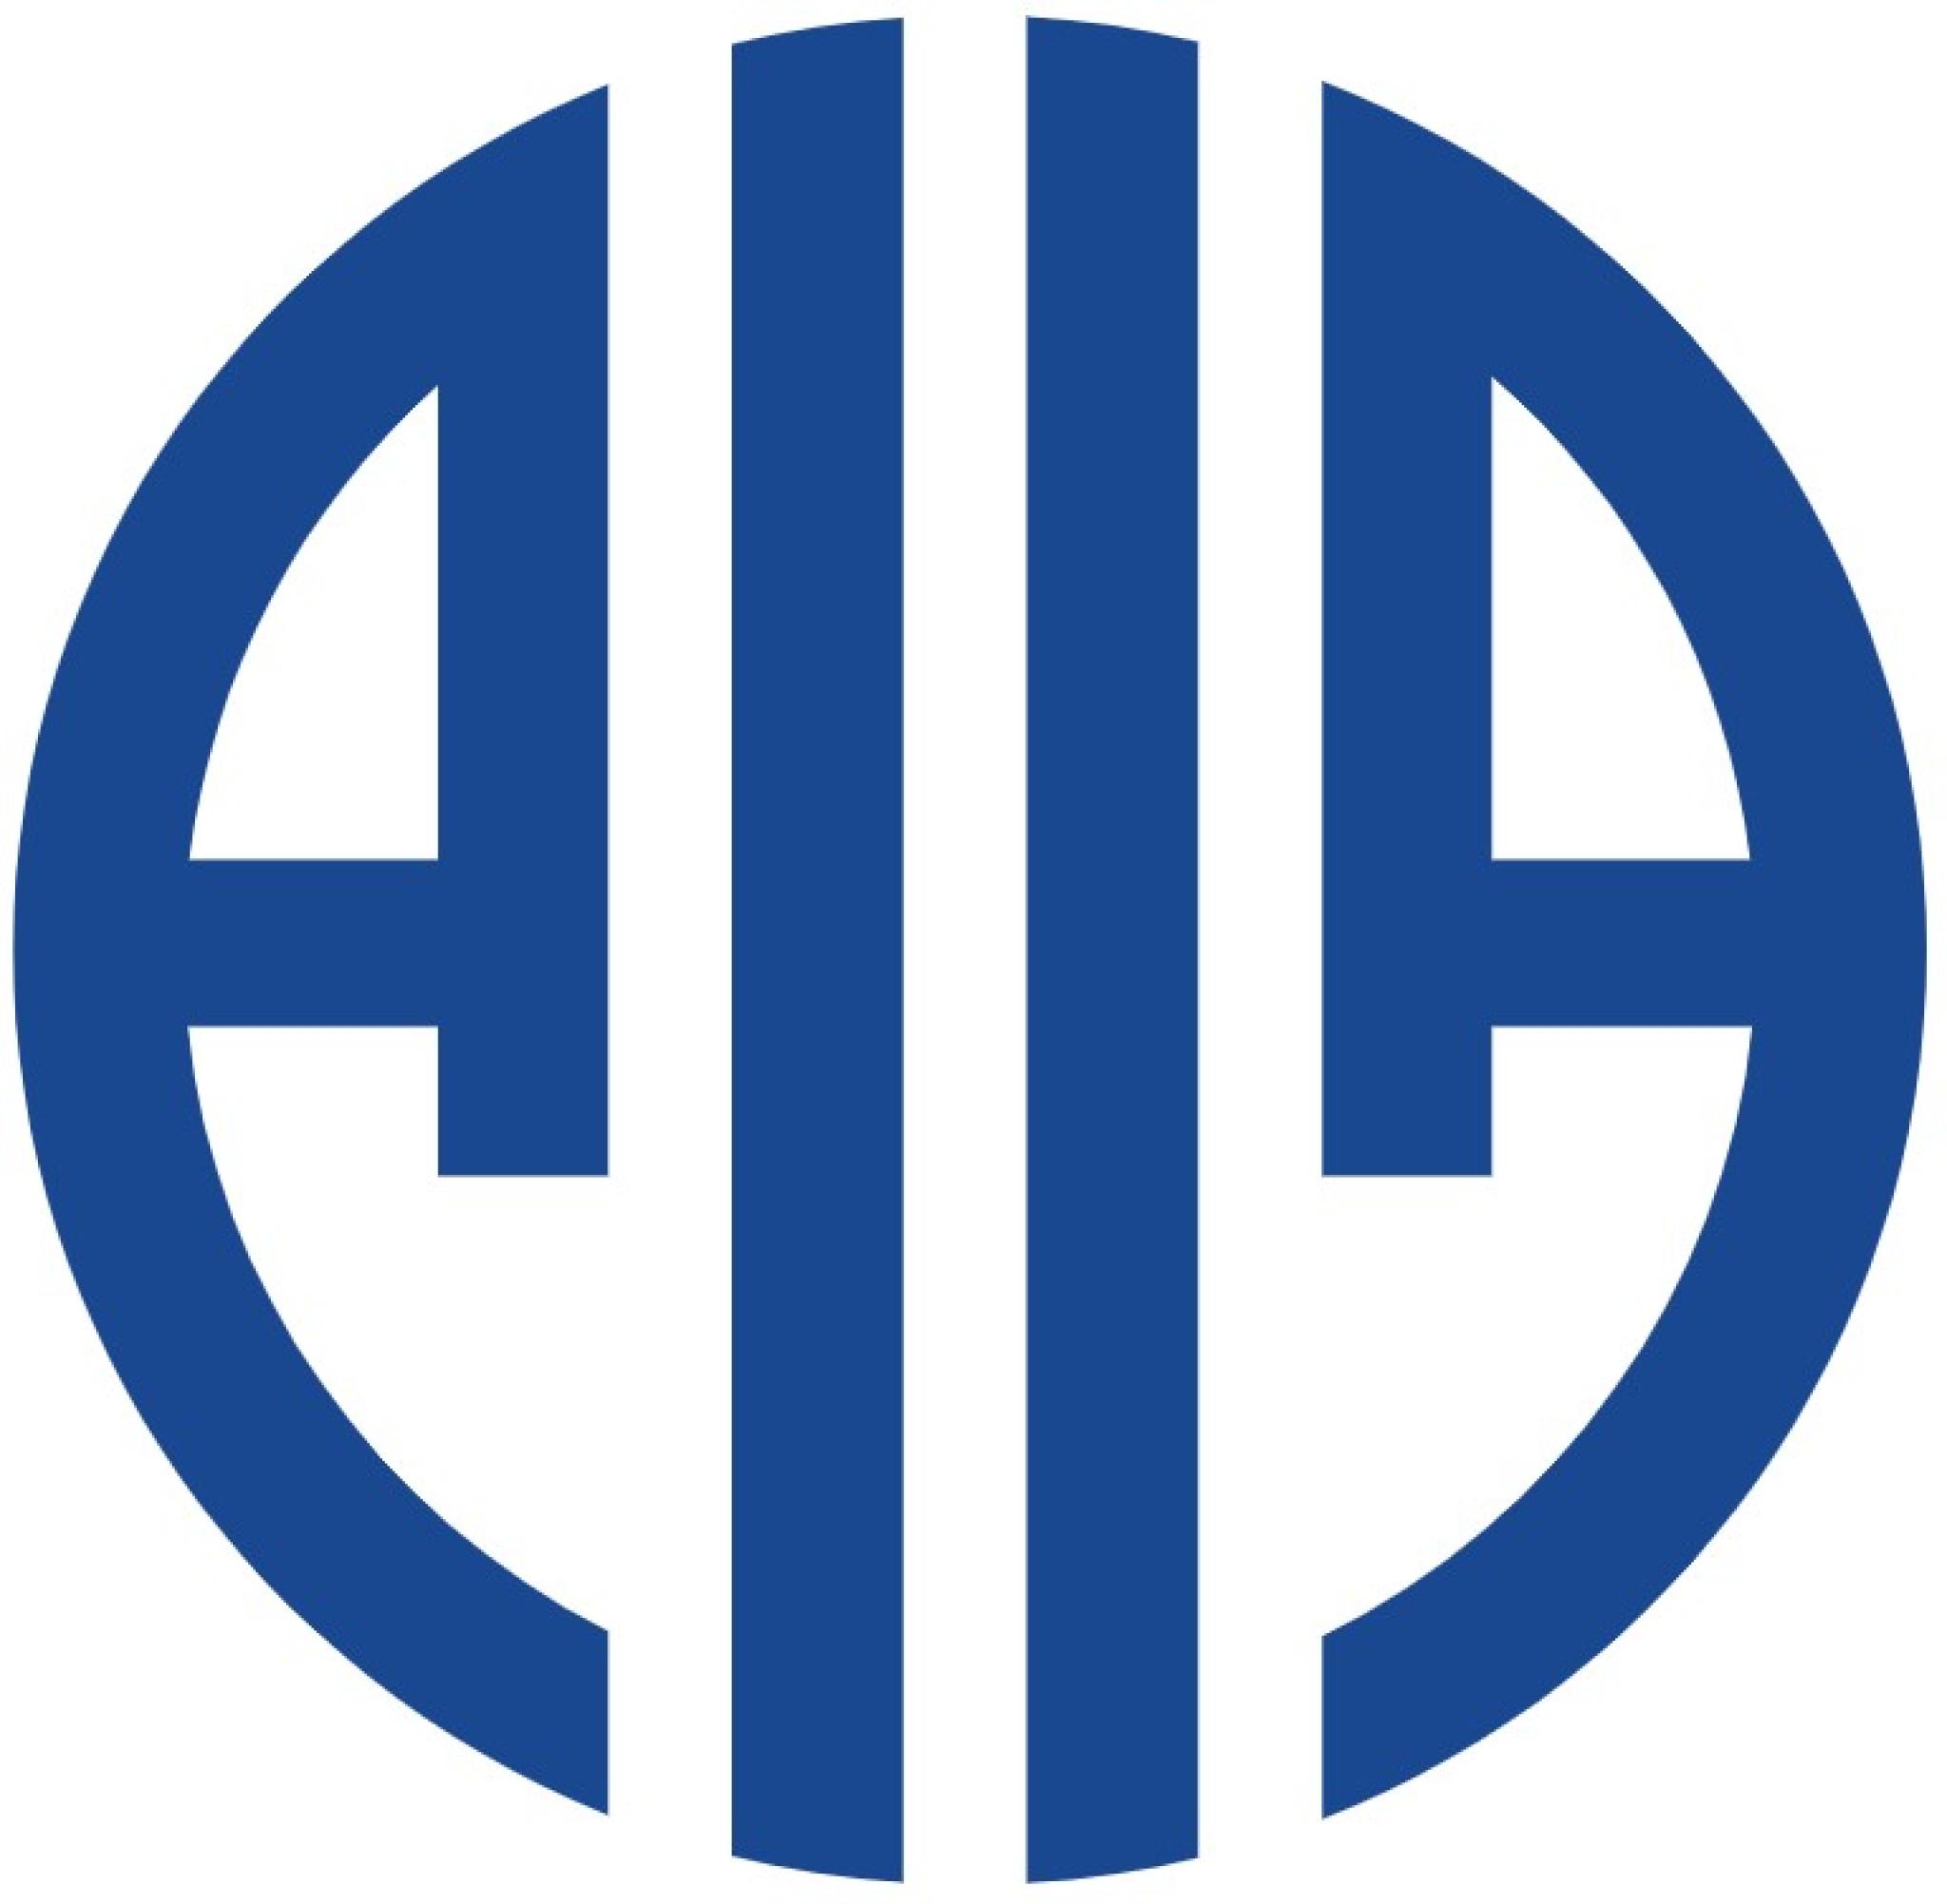 AIIA logo